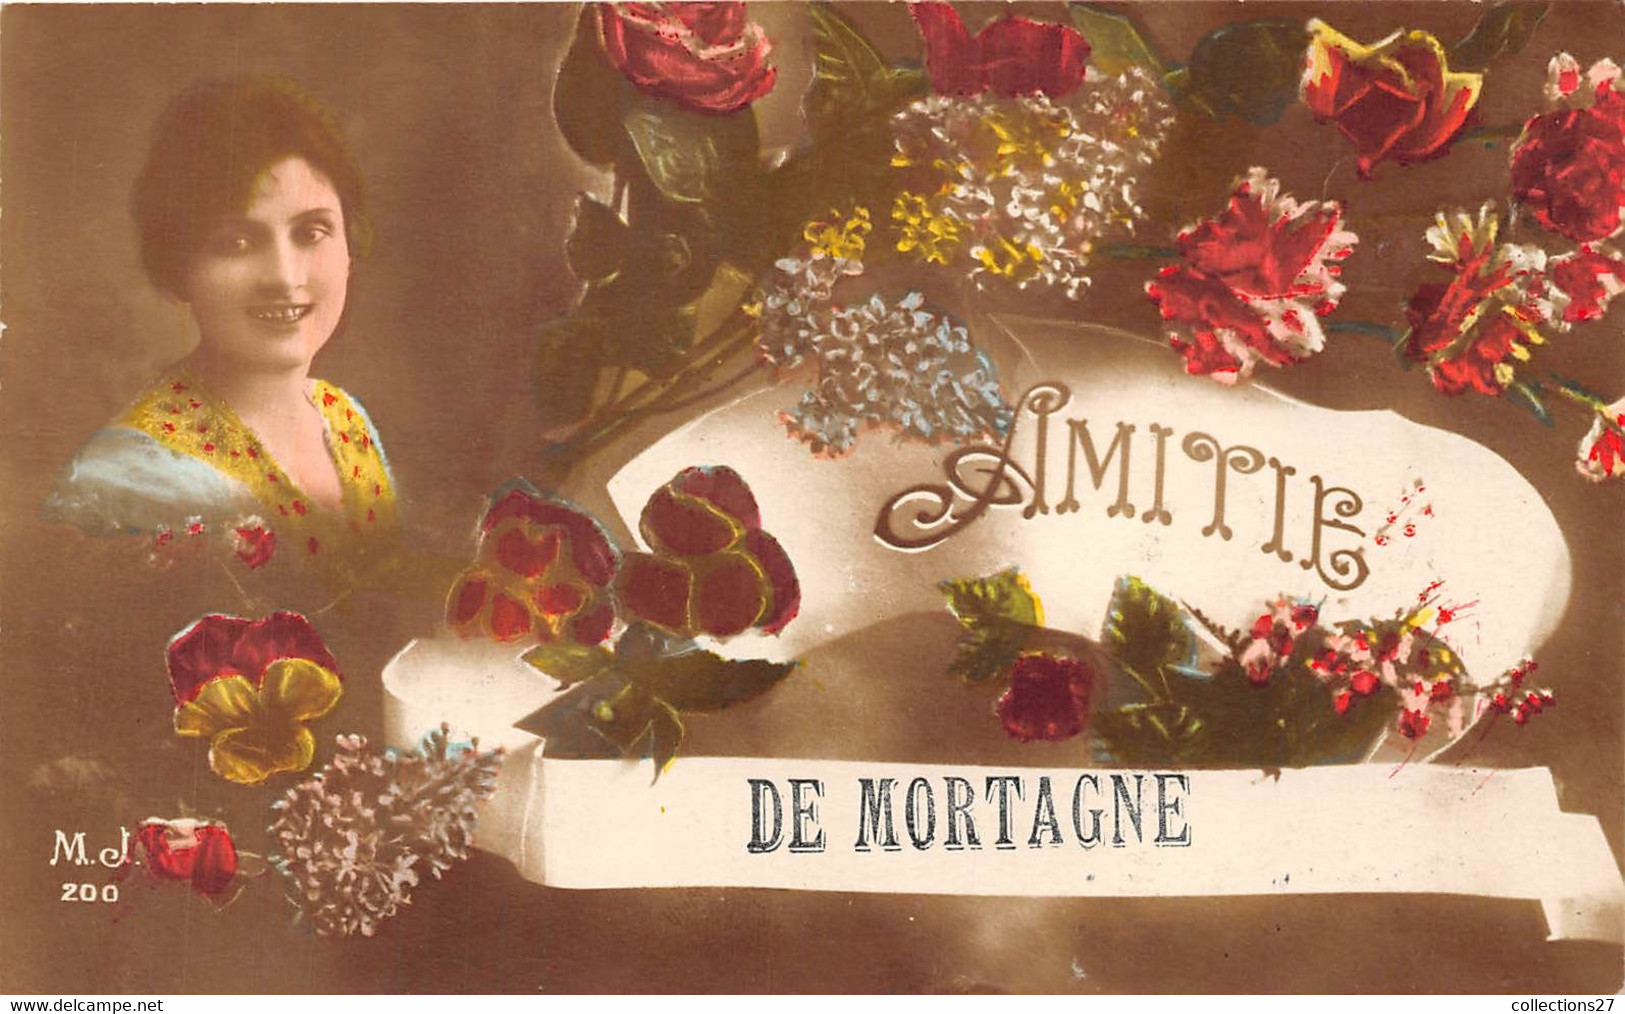 61-MORTAGNE- AMITIE DE MORTAGNE - Mortagne Au Perche